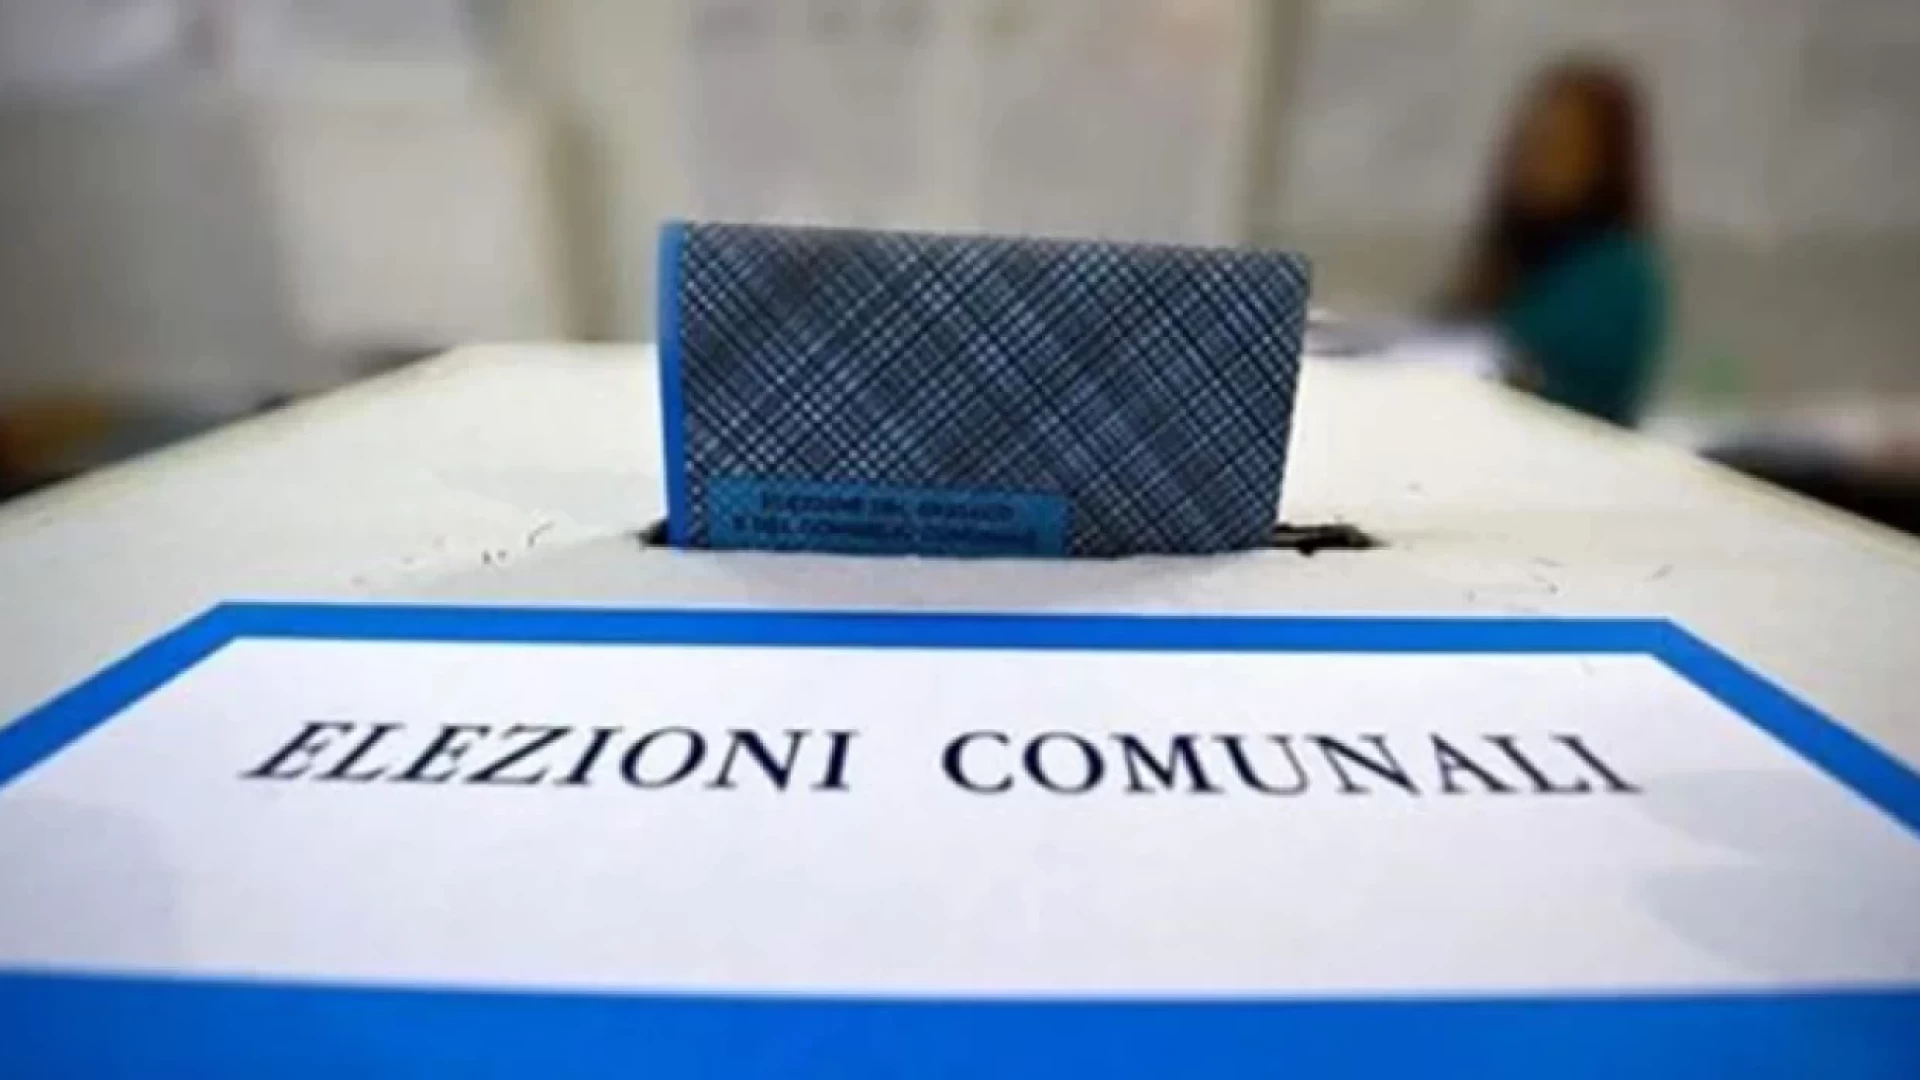 Venafro: le preferenze complete delle liste di Bianchi, Ferreri e Viscione, candidato per candidato.